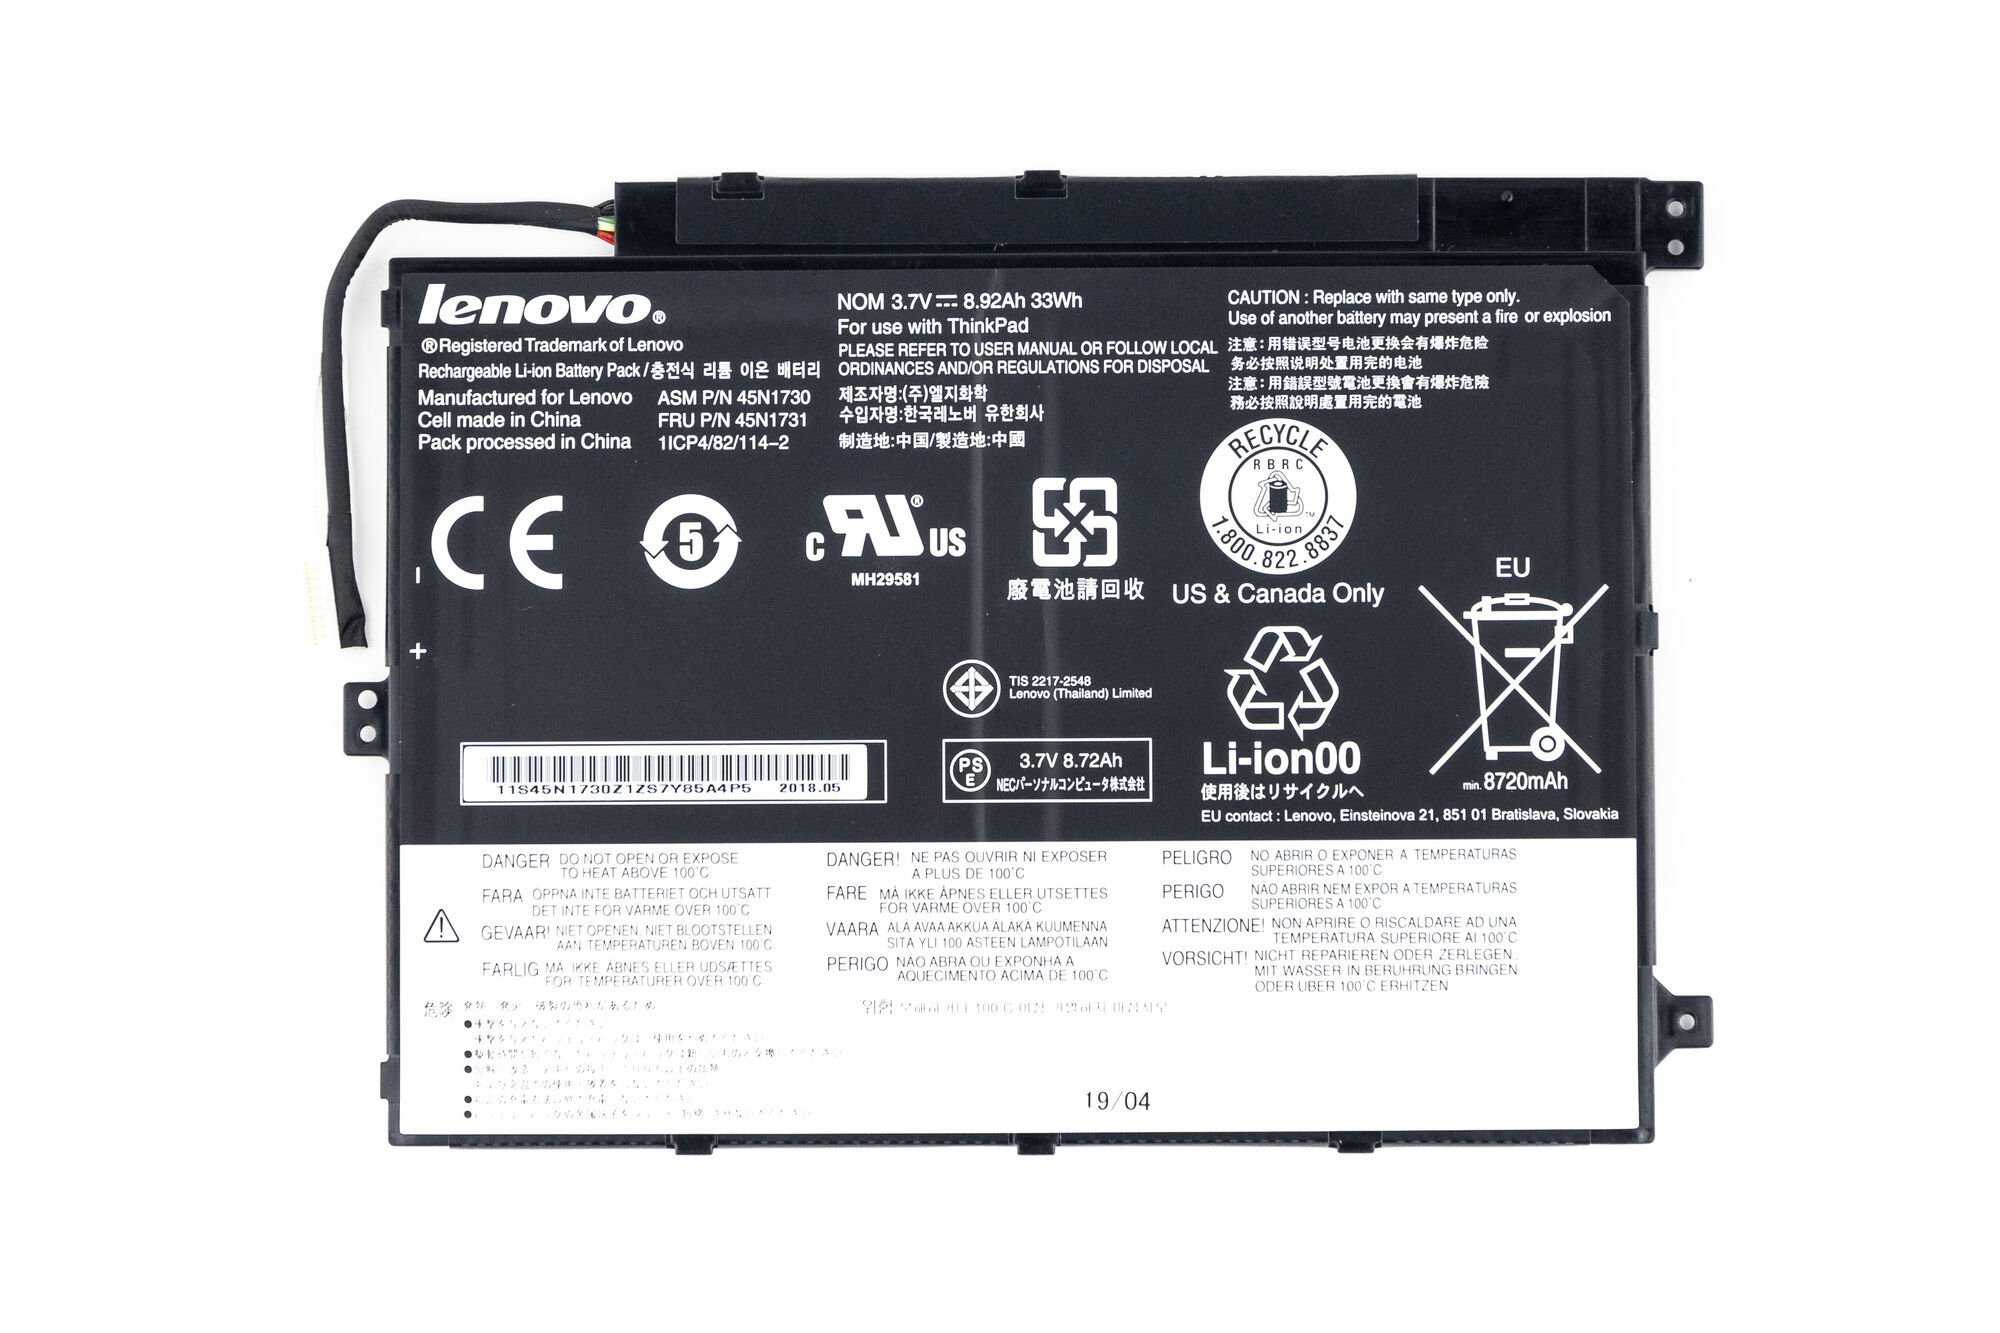 Аккумуляторная батарея для Lenovo ThinkPad 10 (3.7V 33Wh) p/n: 45N1730